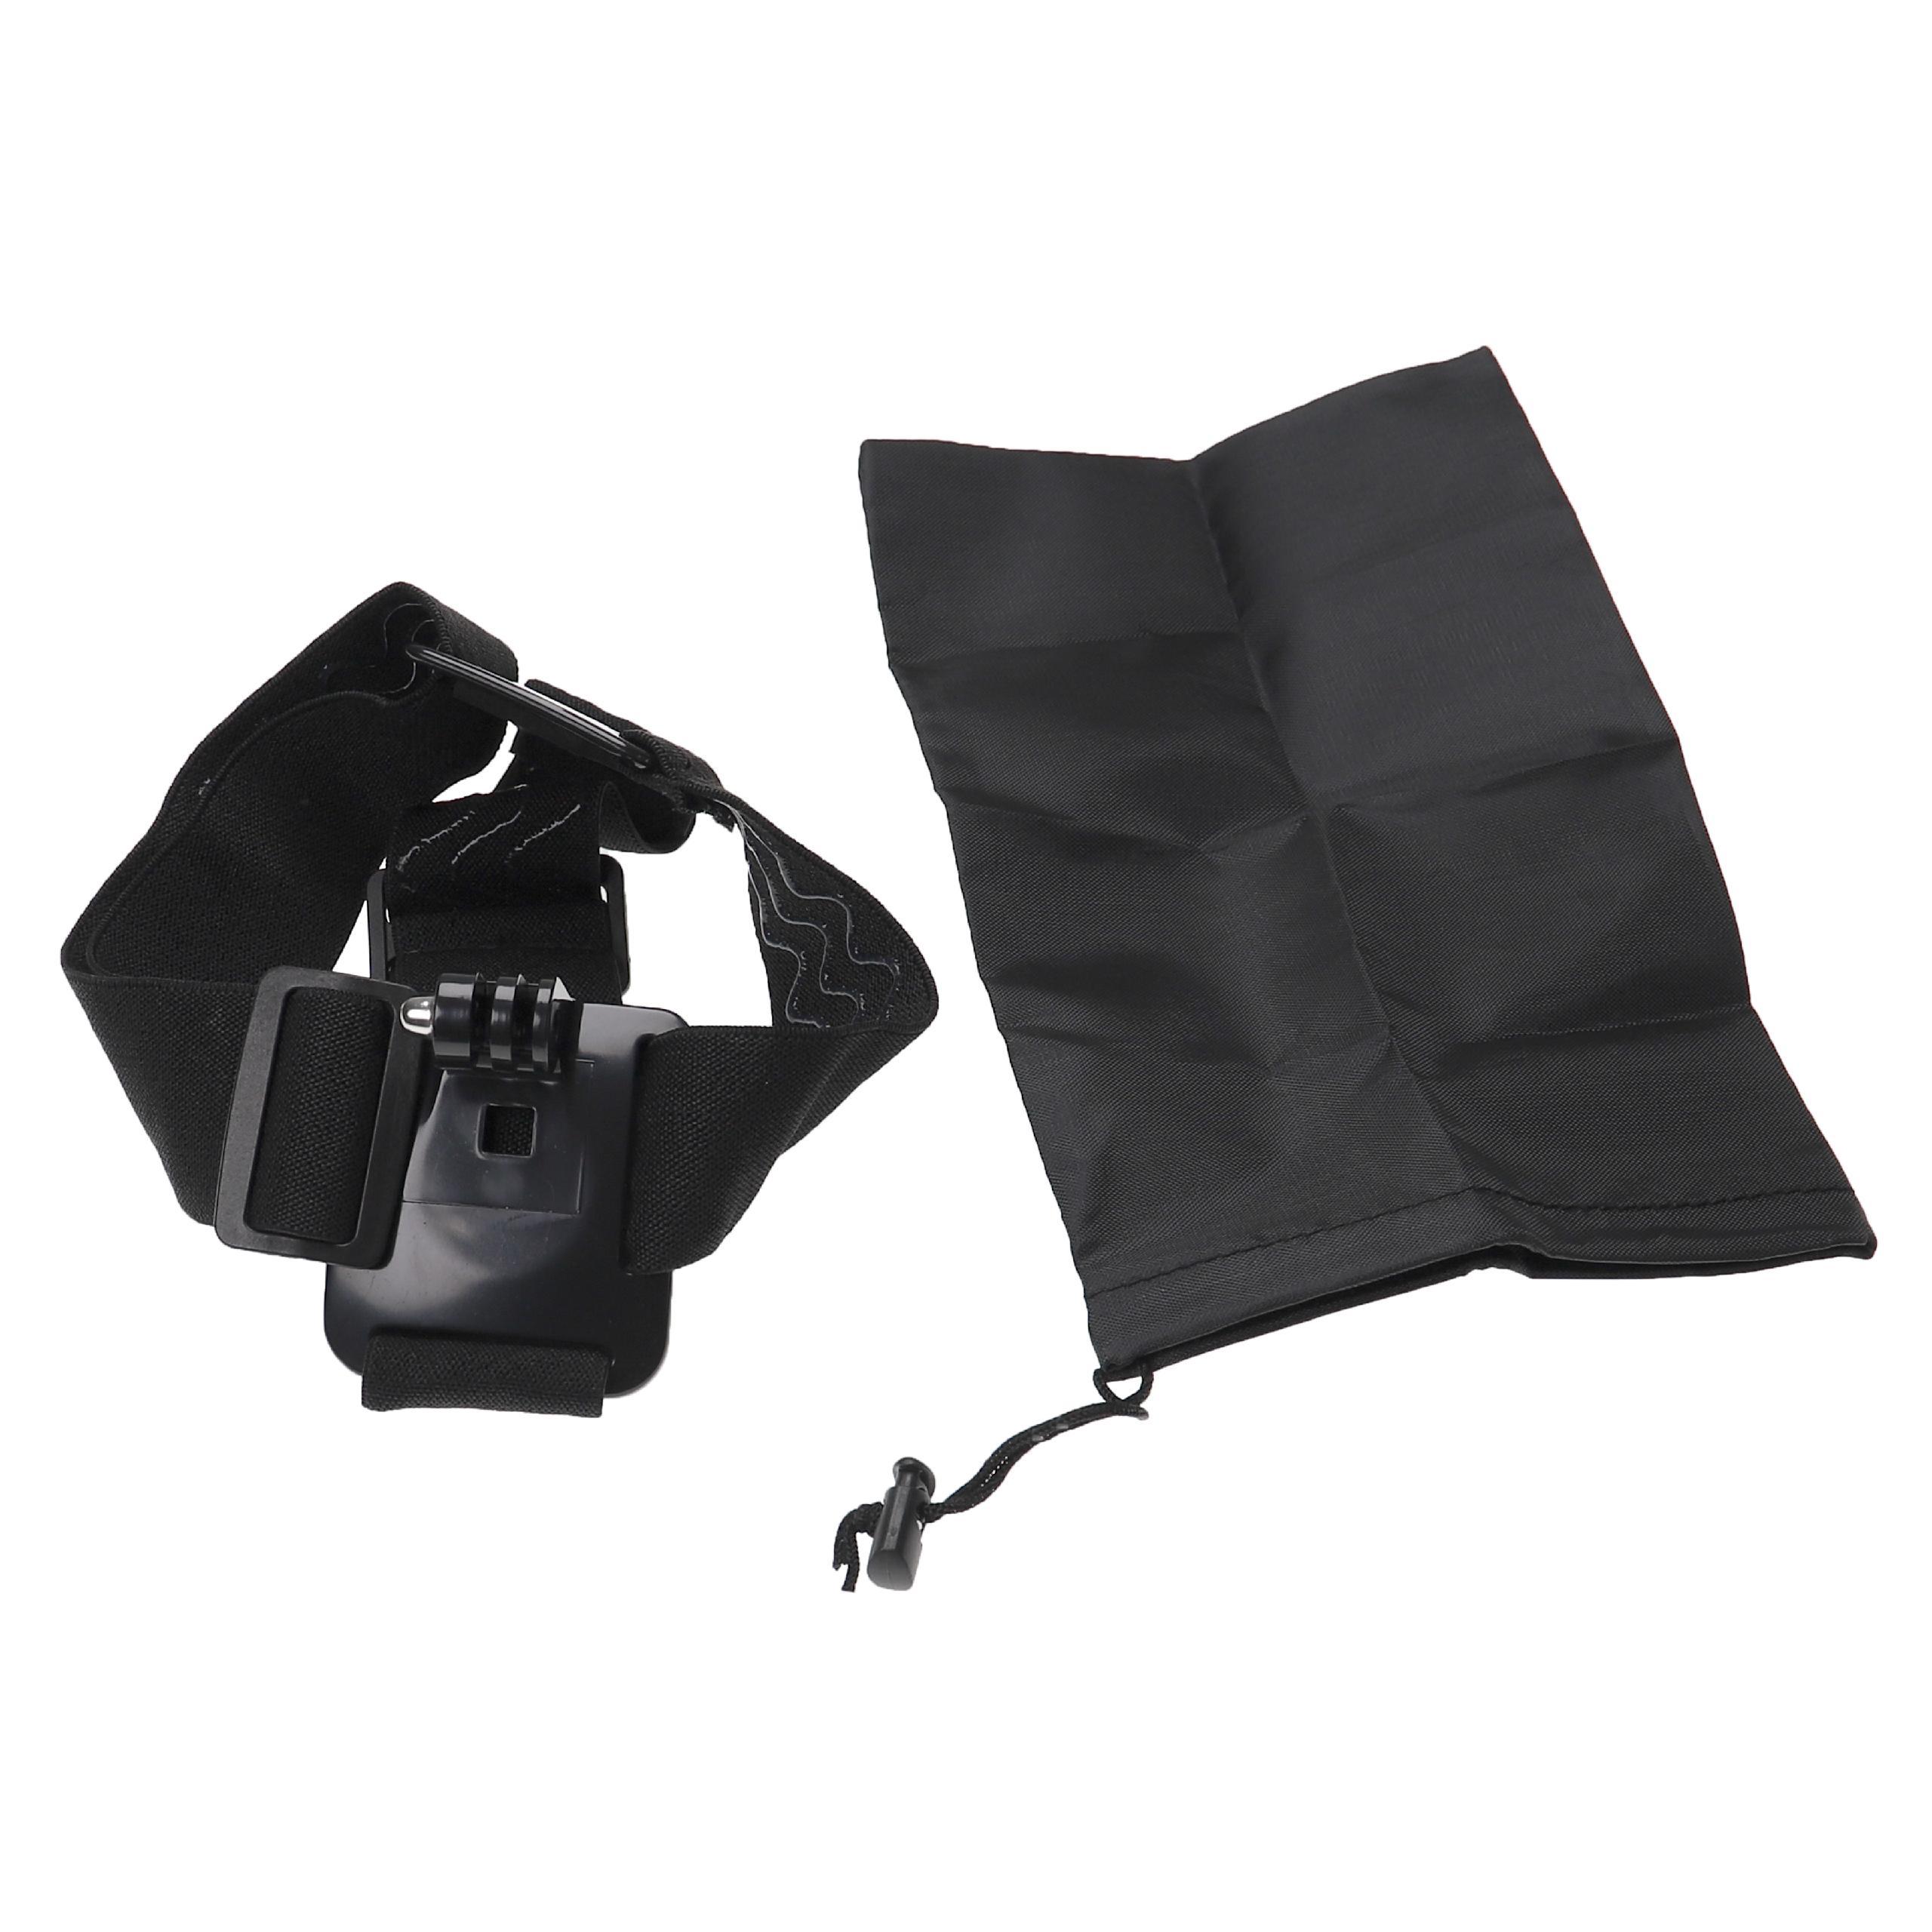 Banda de cabeza para cámara de acción Garmin, GoPro VIRB Elite - Banda frente + bolsa de transporte negro